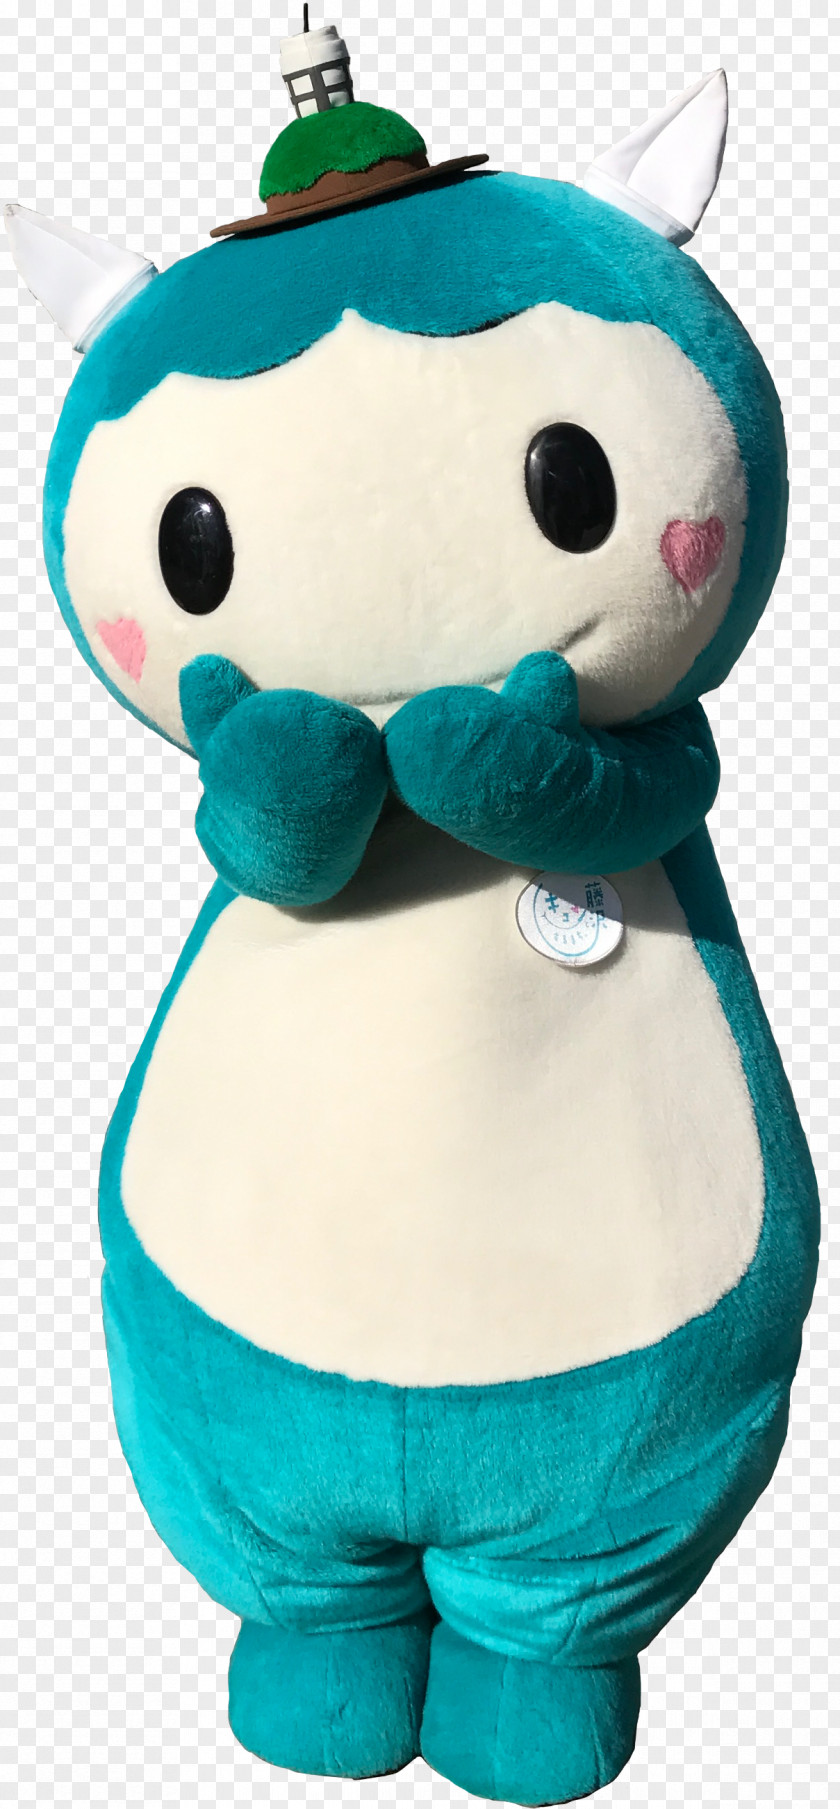 Plush Mascot Fujisawa Stuffed Animals & Cuddly Toys Japanese Wisteria PNG